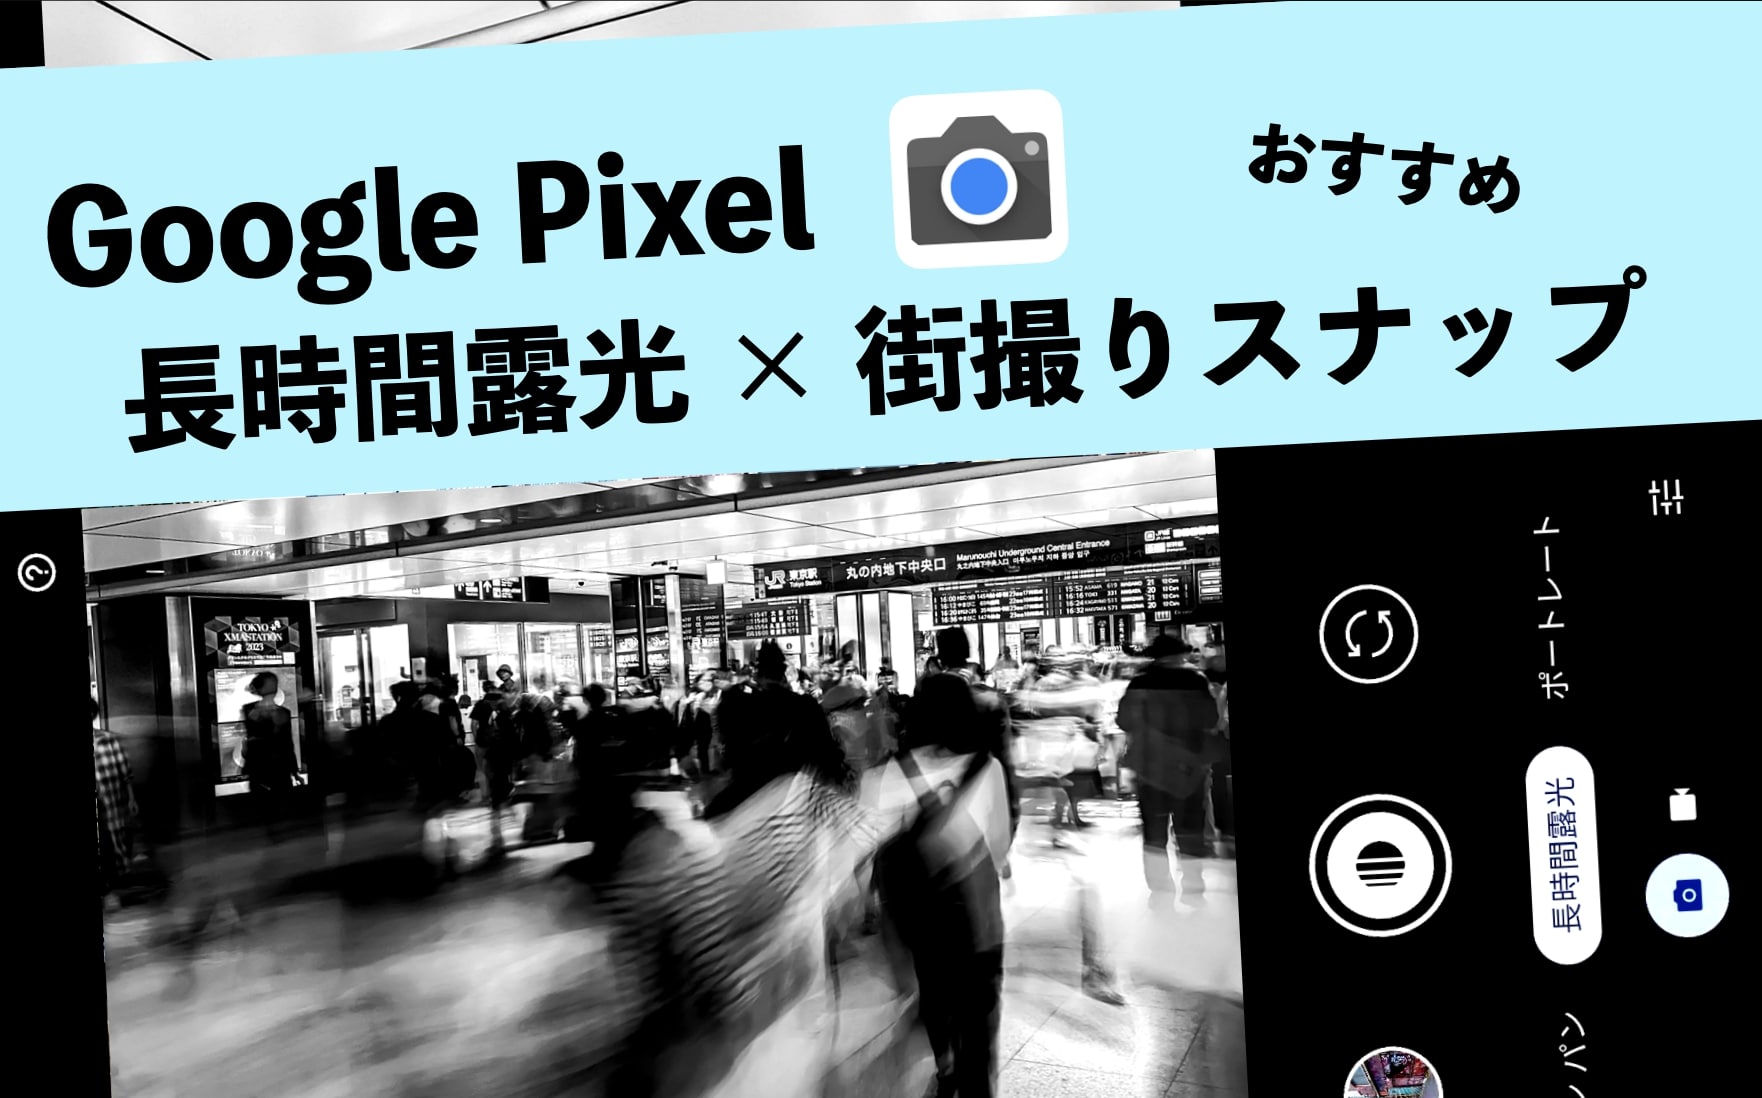 Google,Pixel,長時間露光,使い方,撮り方